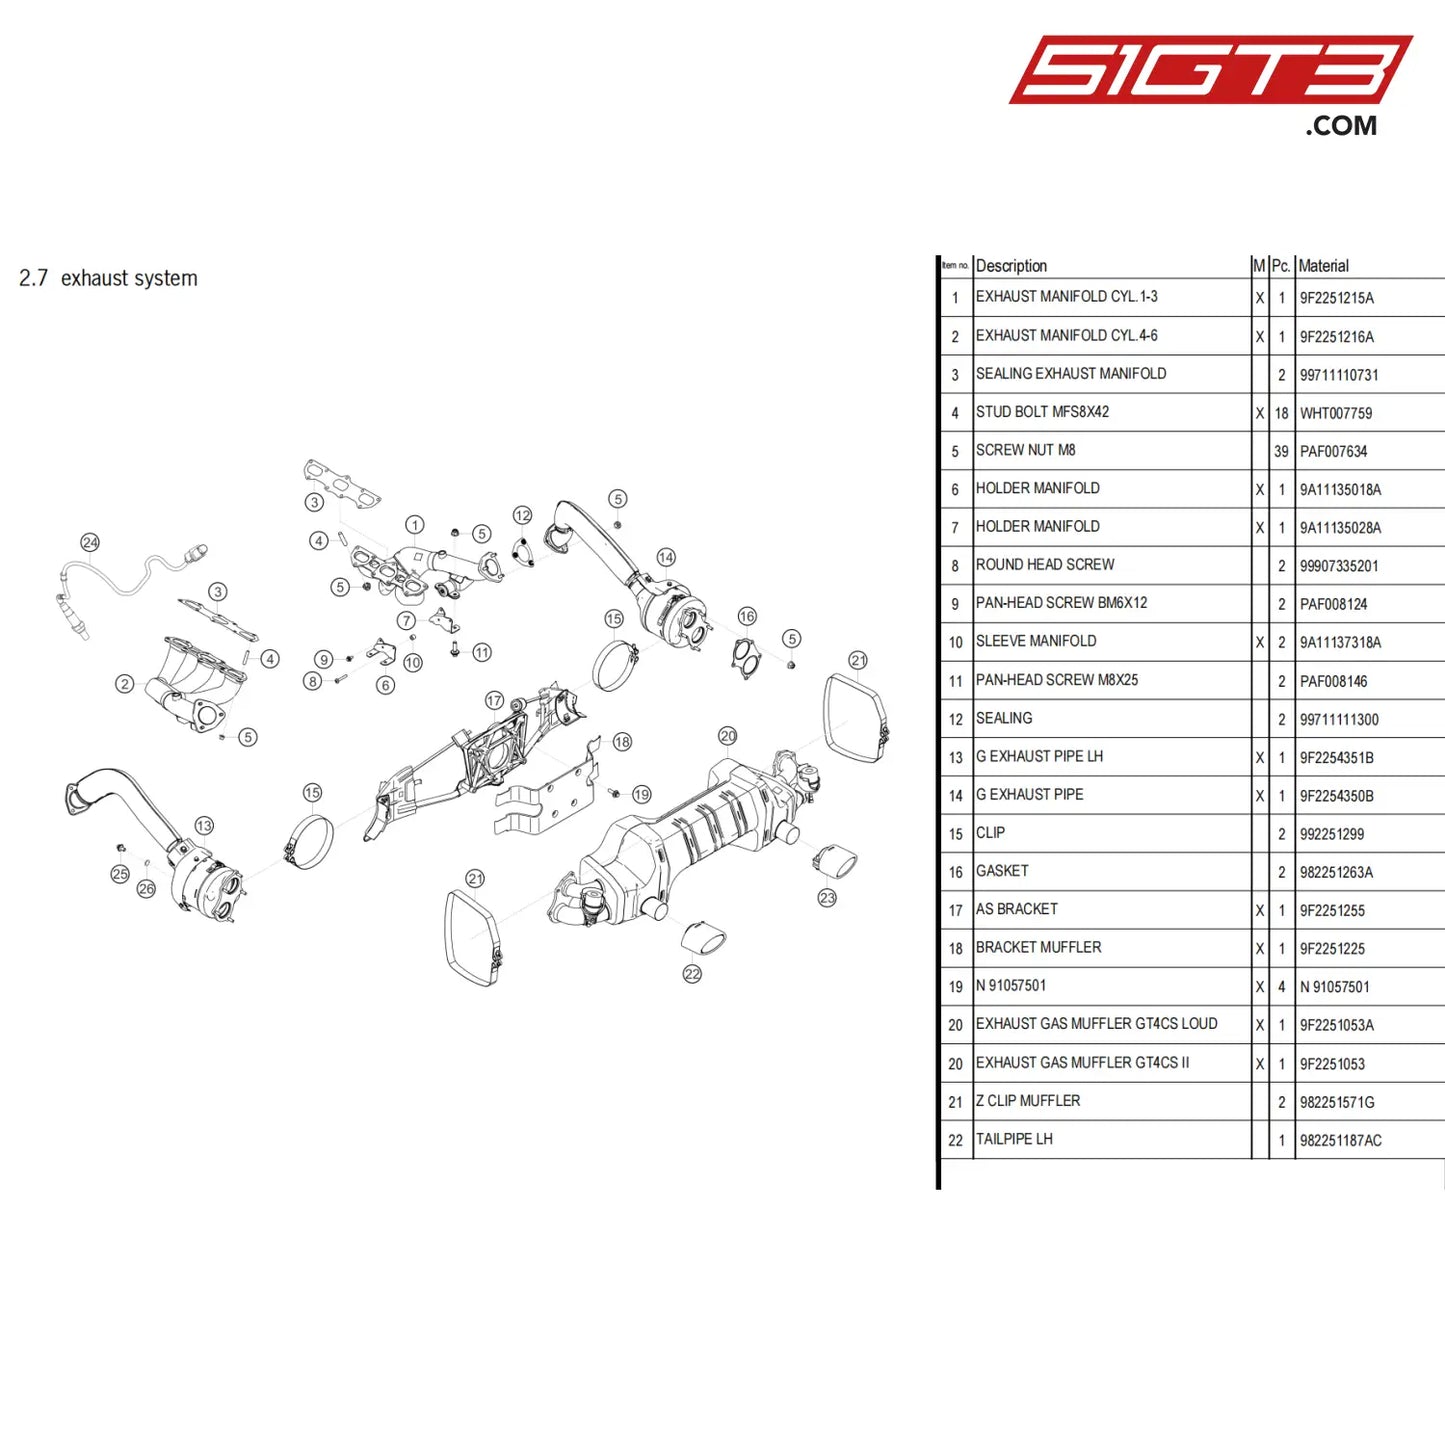 Sleeve Manifold - 9A11137318A [Porsche 718 Cayman Gt4 Clubsport] Exhaust System